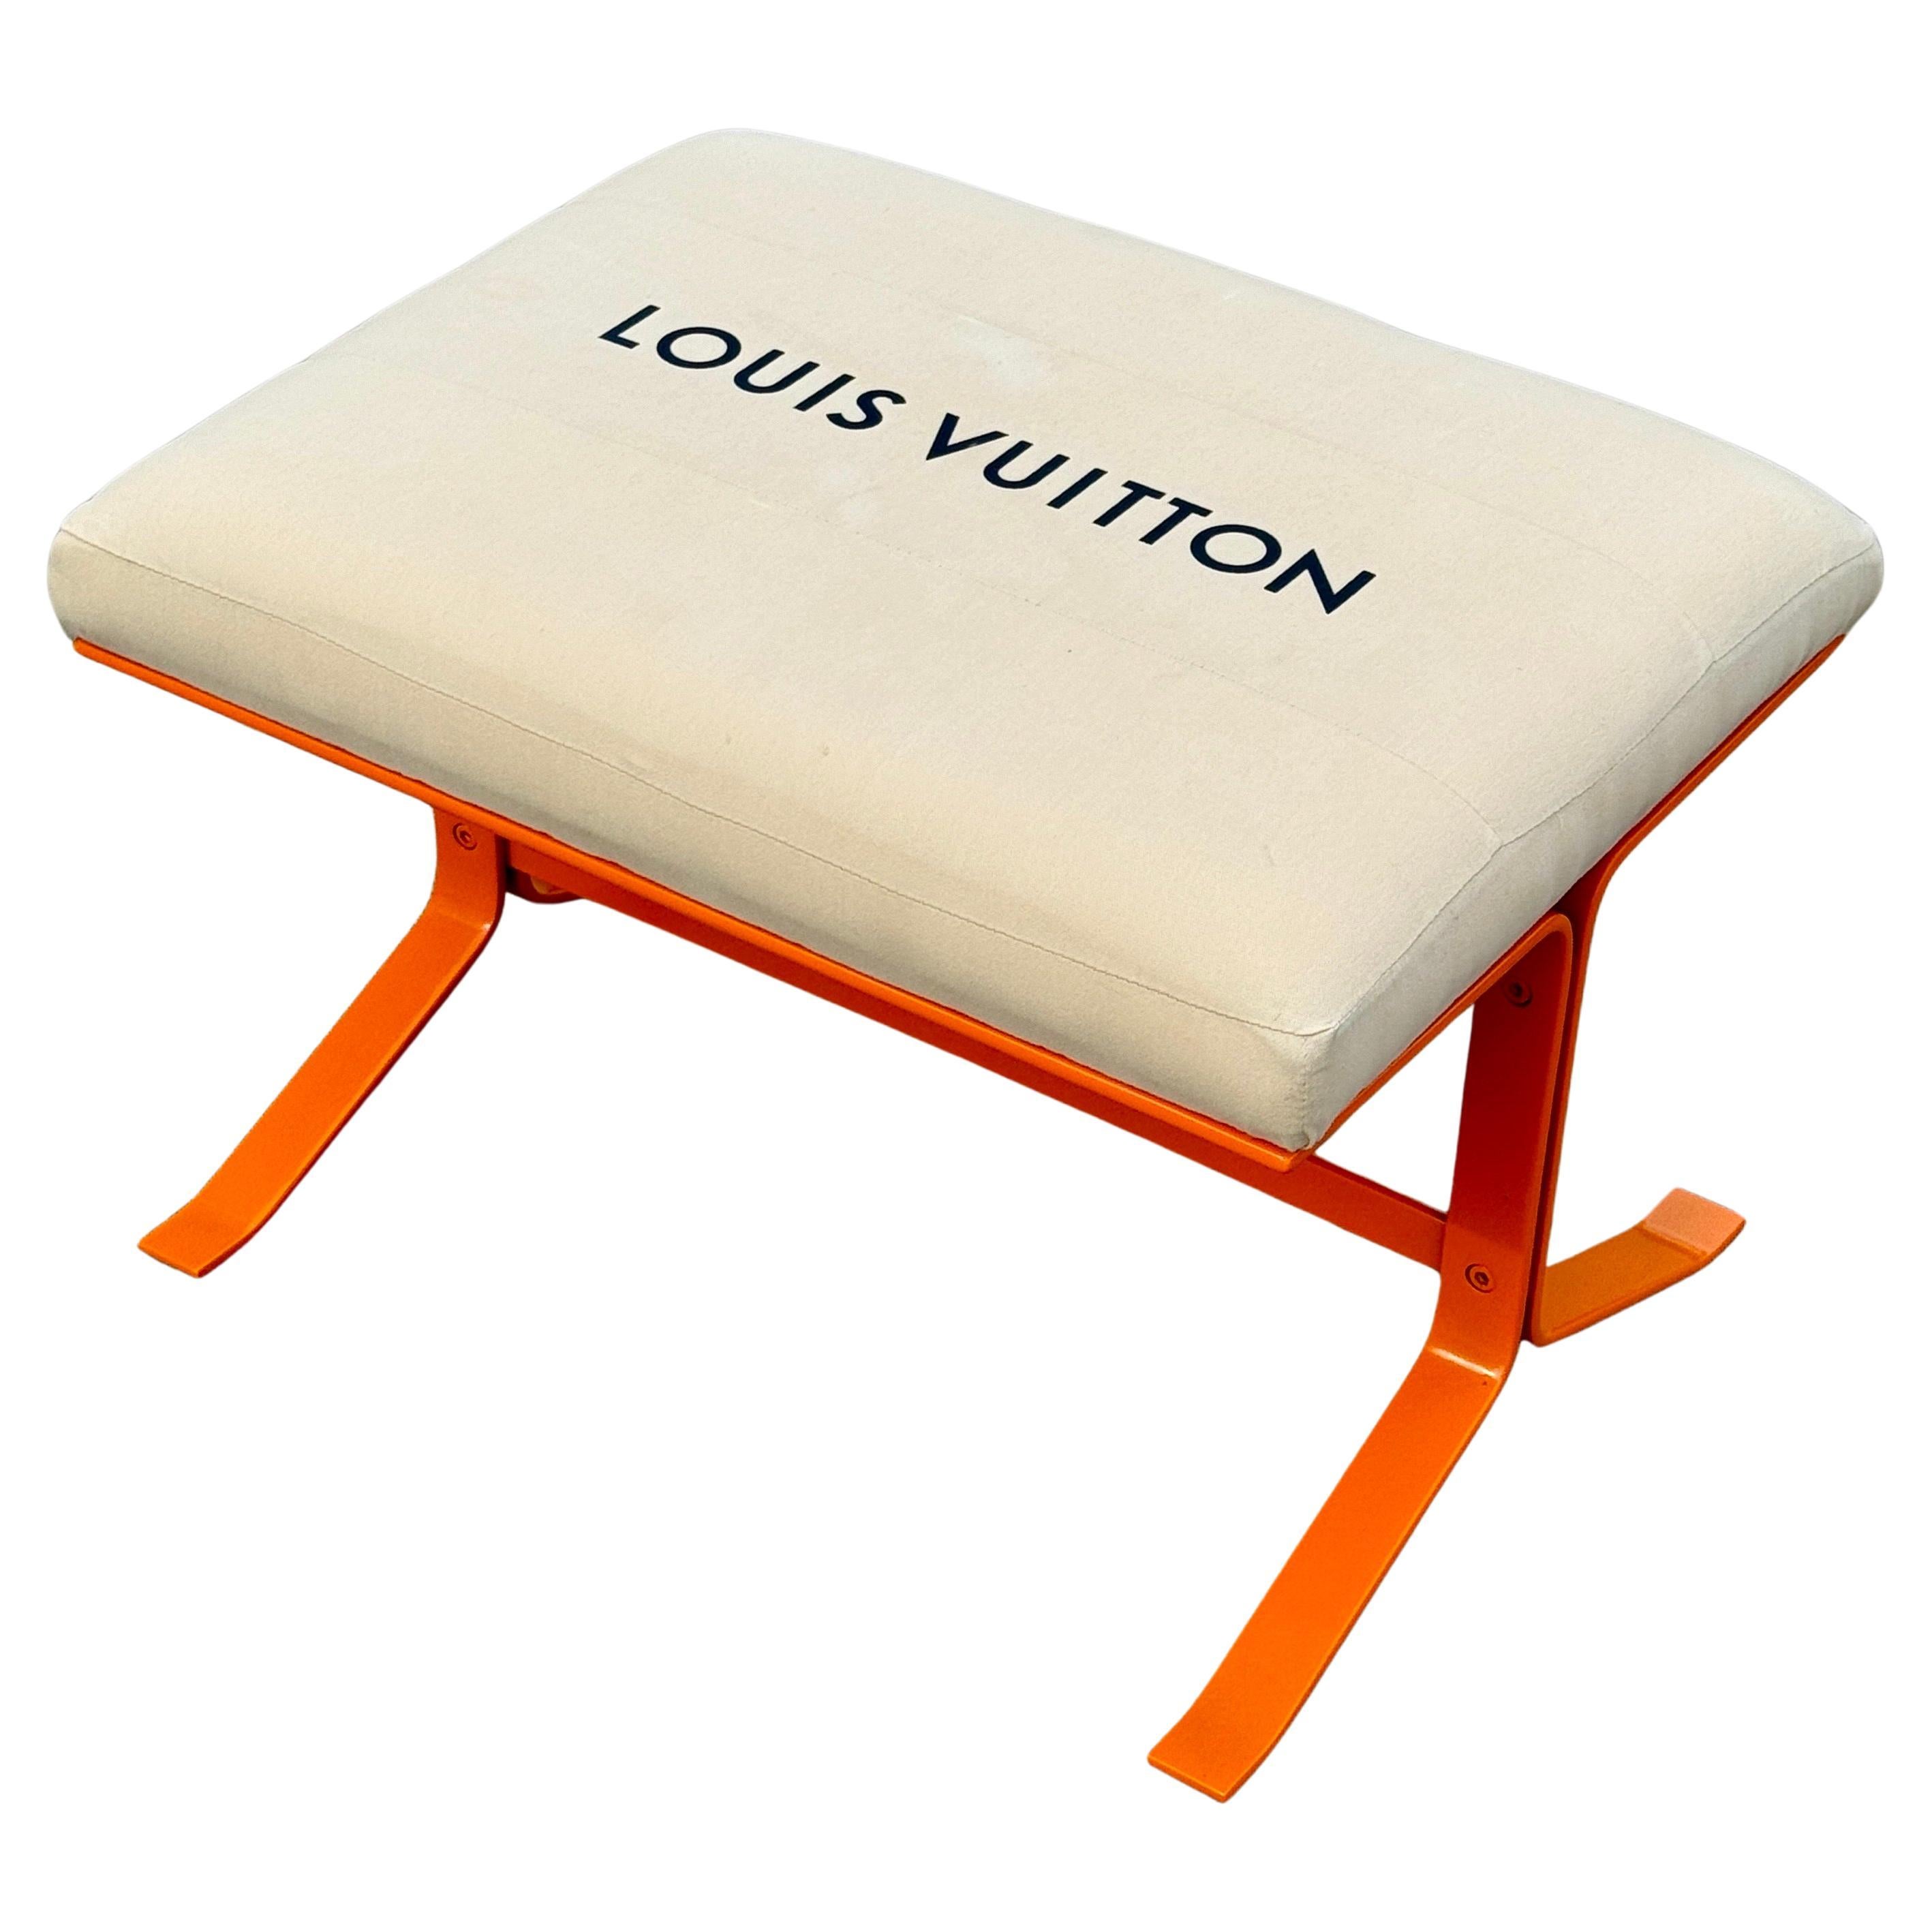 Gepolsterte Bank mit Louis Vuitton-Taschenstoff in Orange